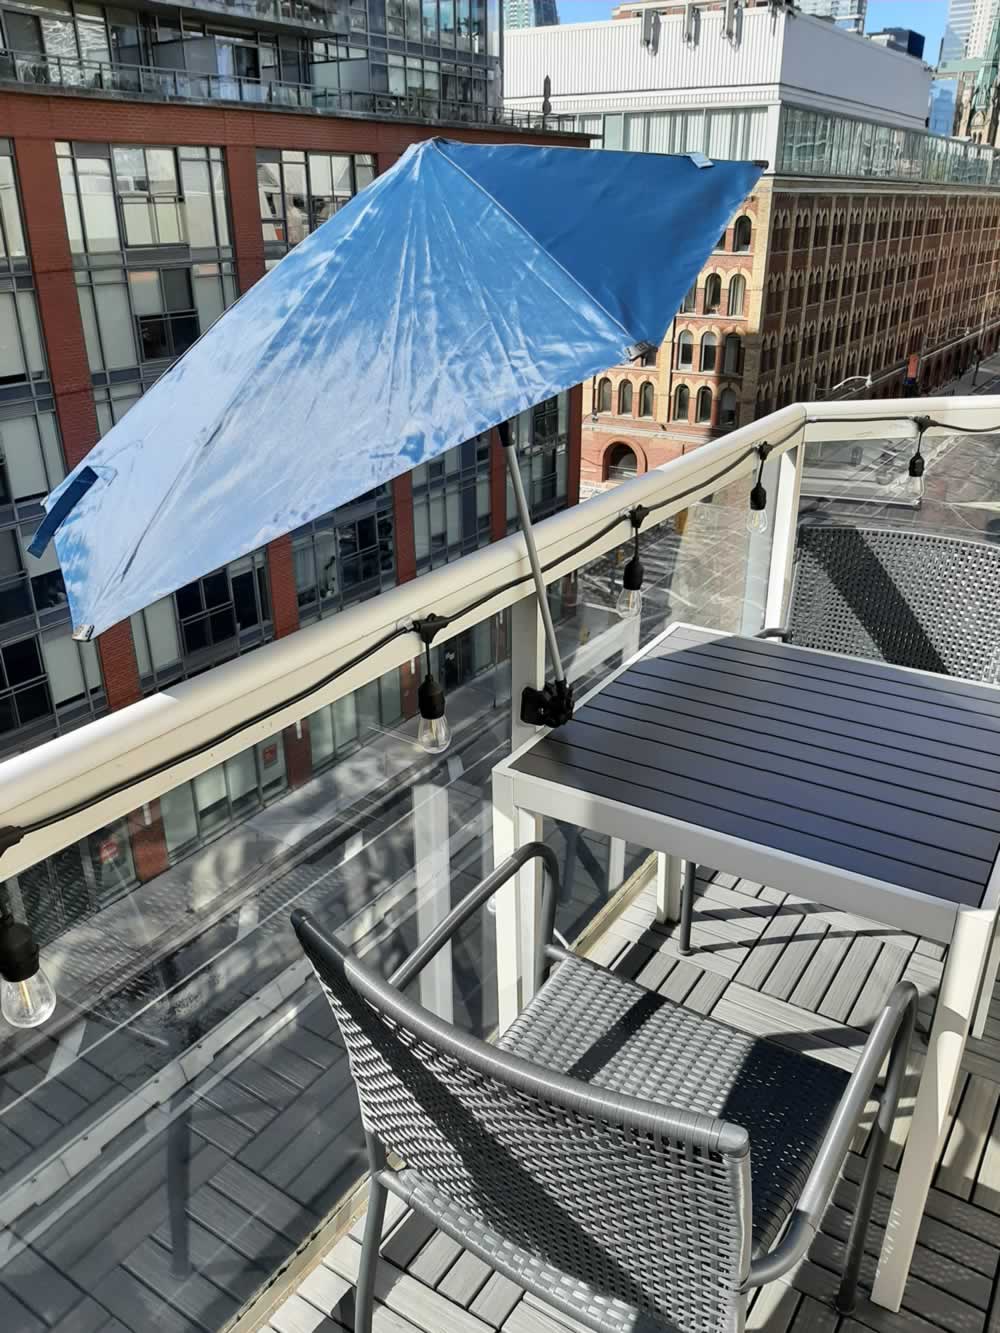 Balcony umbrella providing full shade to table.